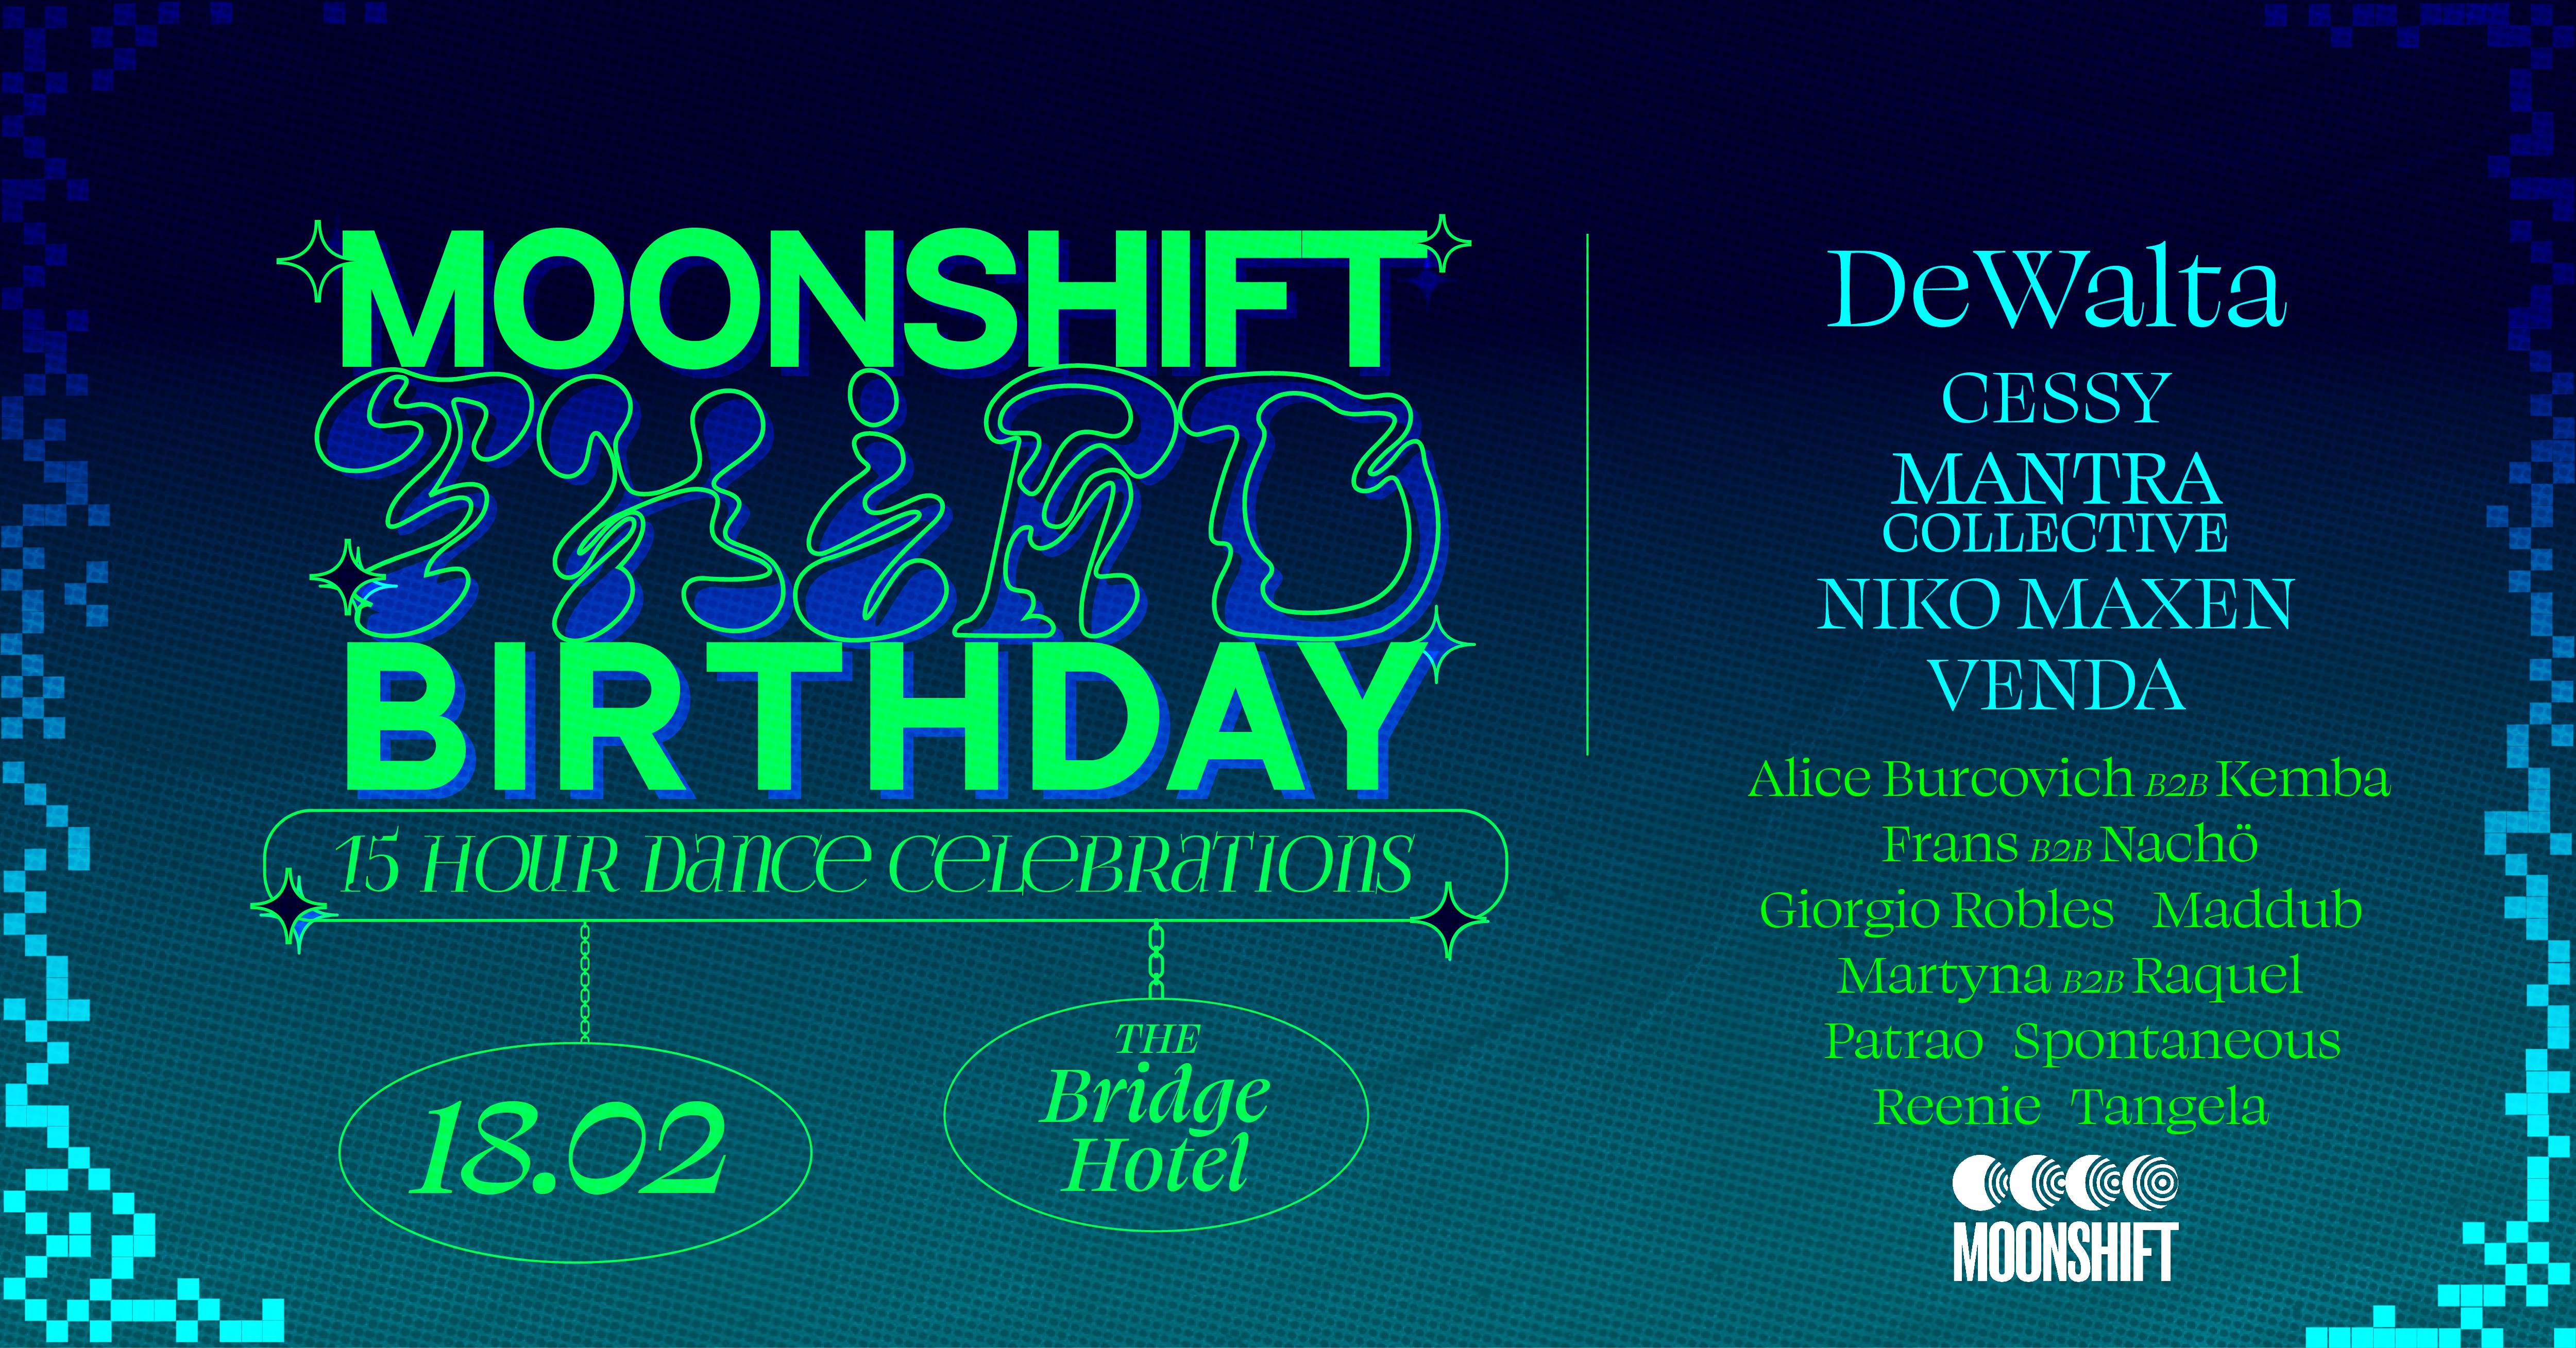 Moonshift 3rd Birthday - Página frontal